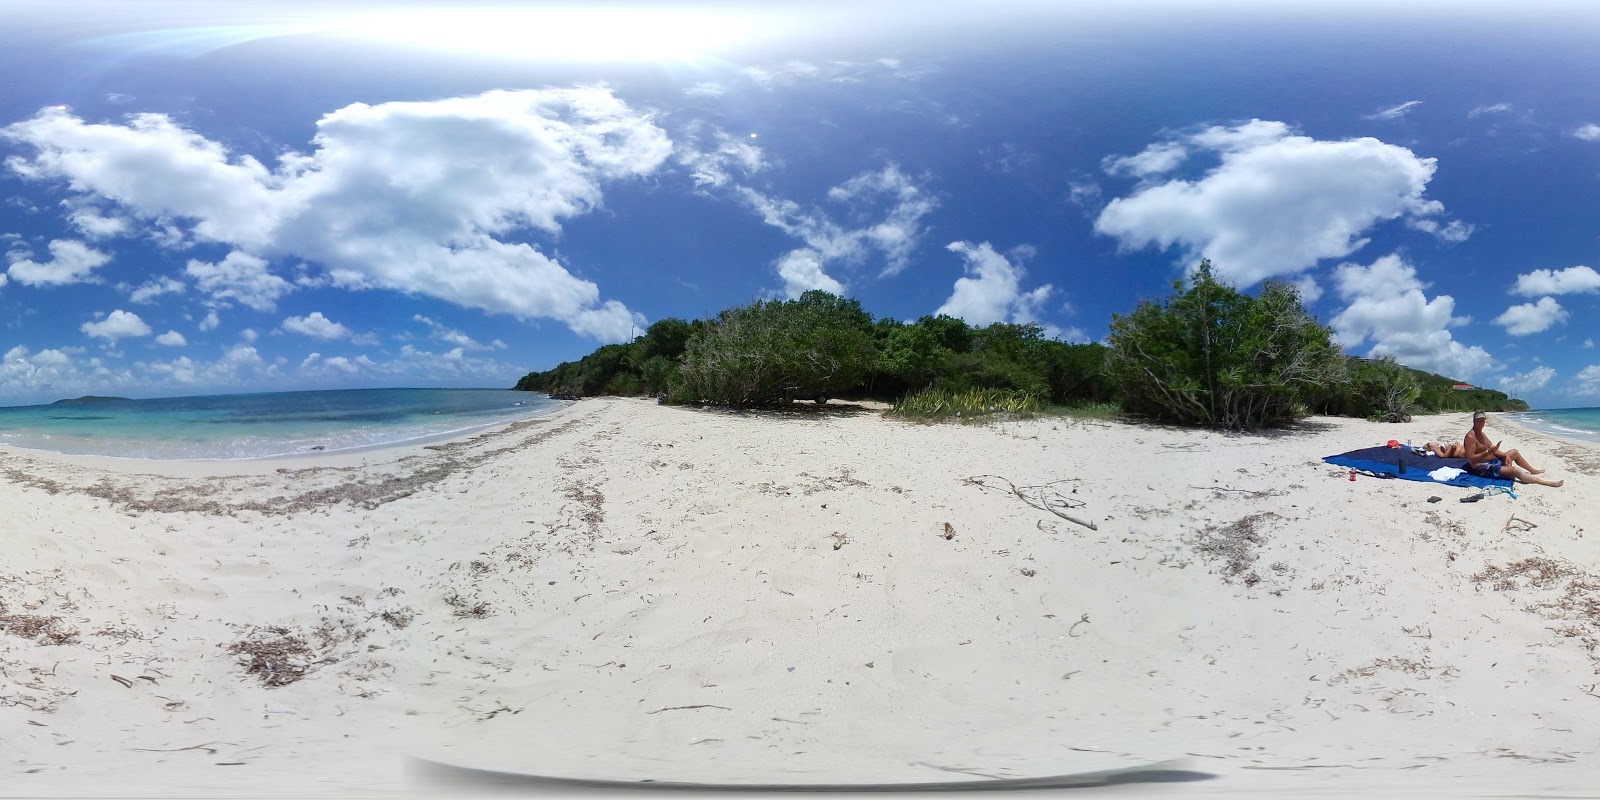 Smugglers Cove beach'in fotoğrafı geniş plaj ile birlikte